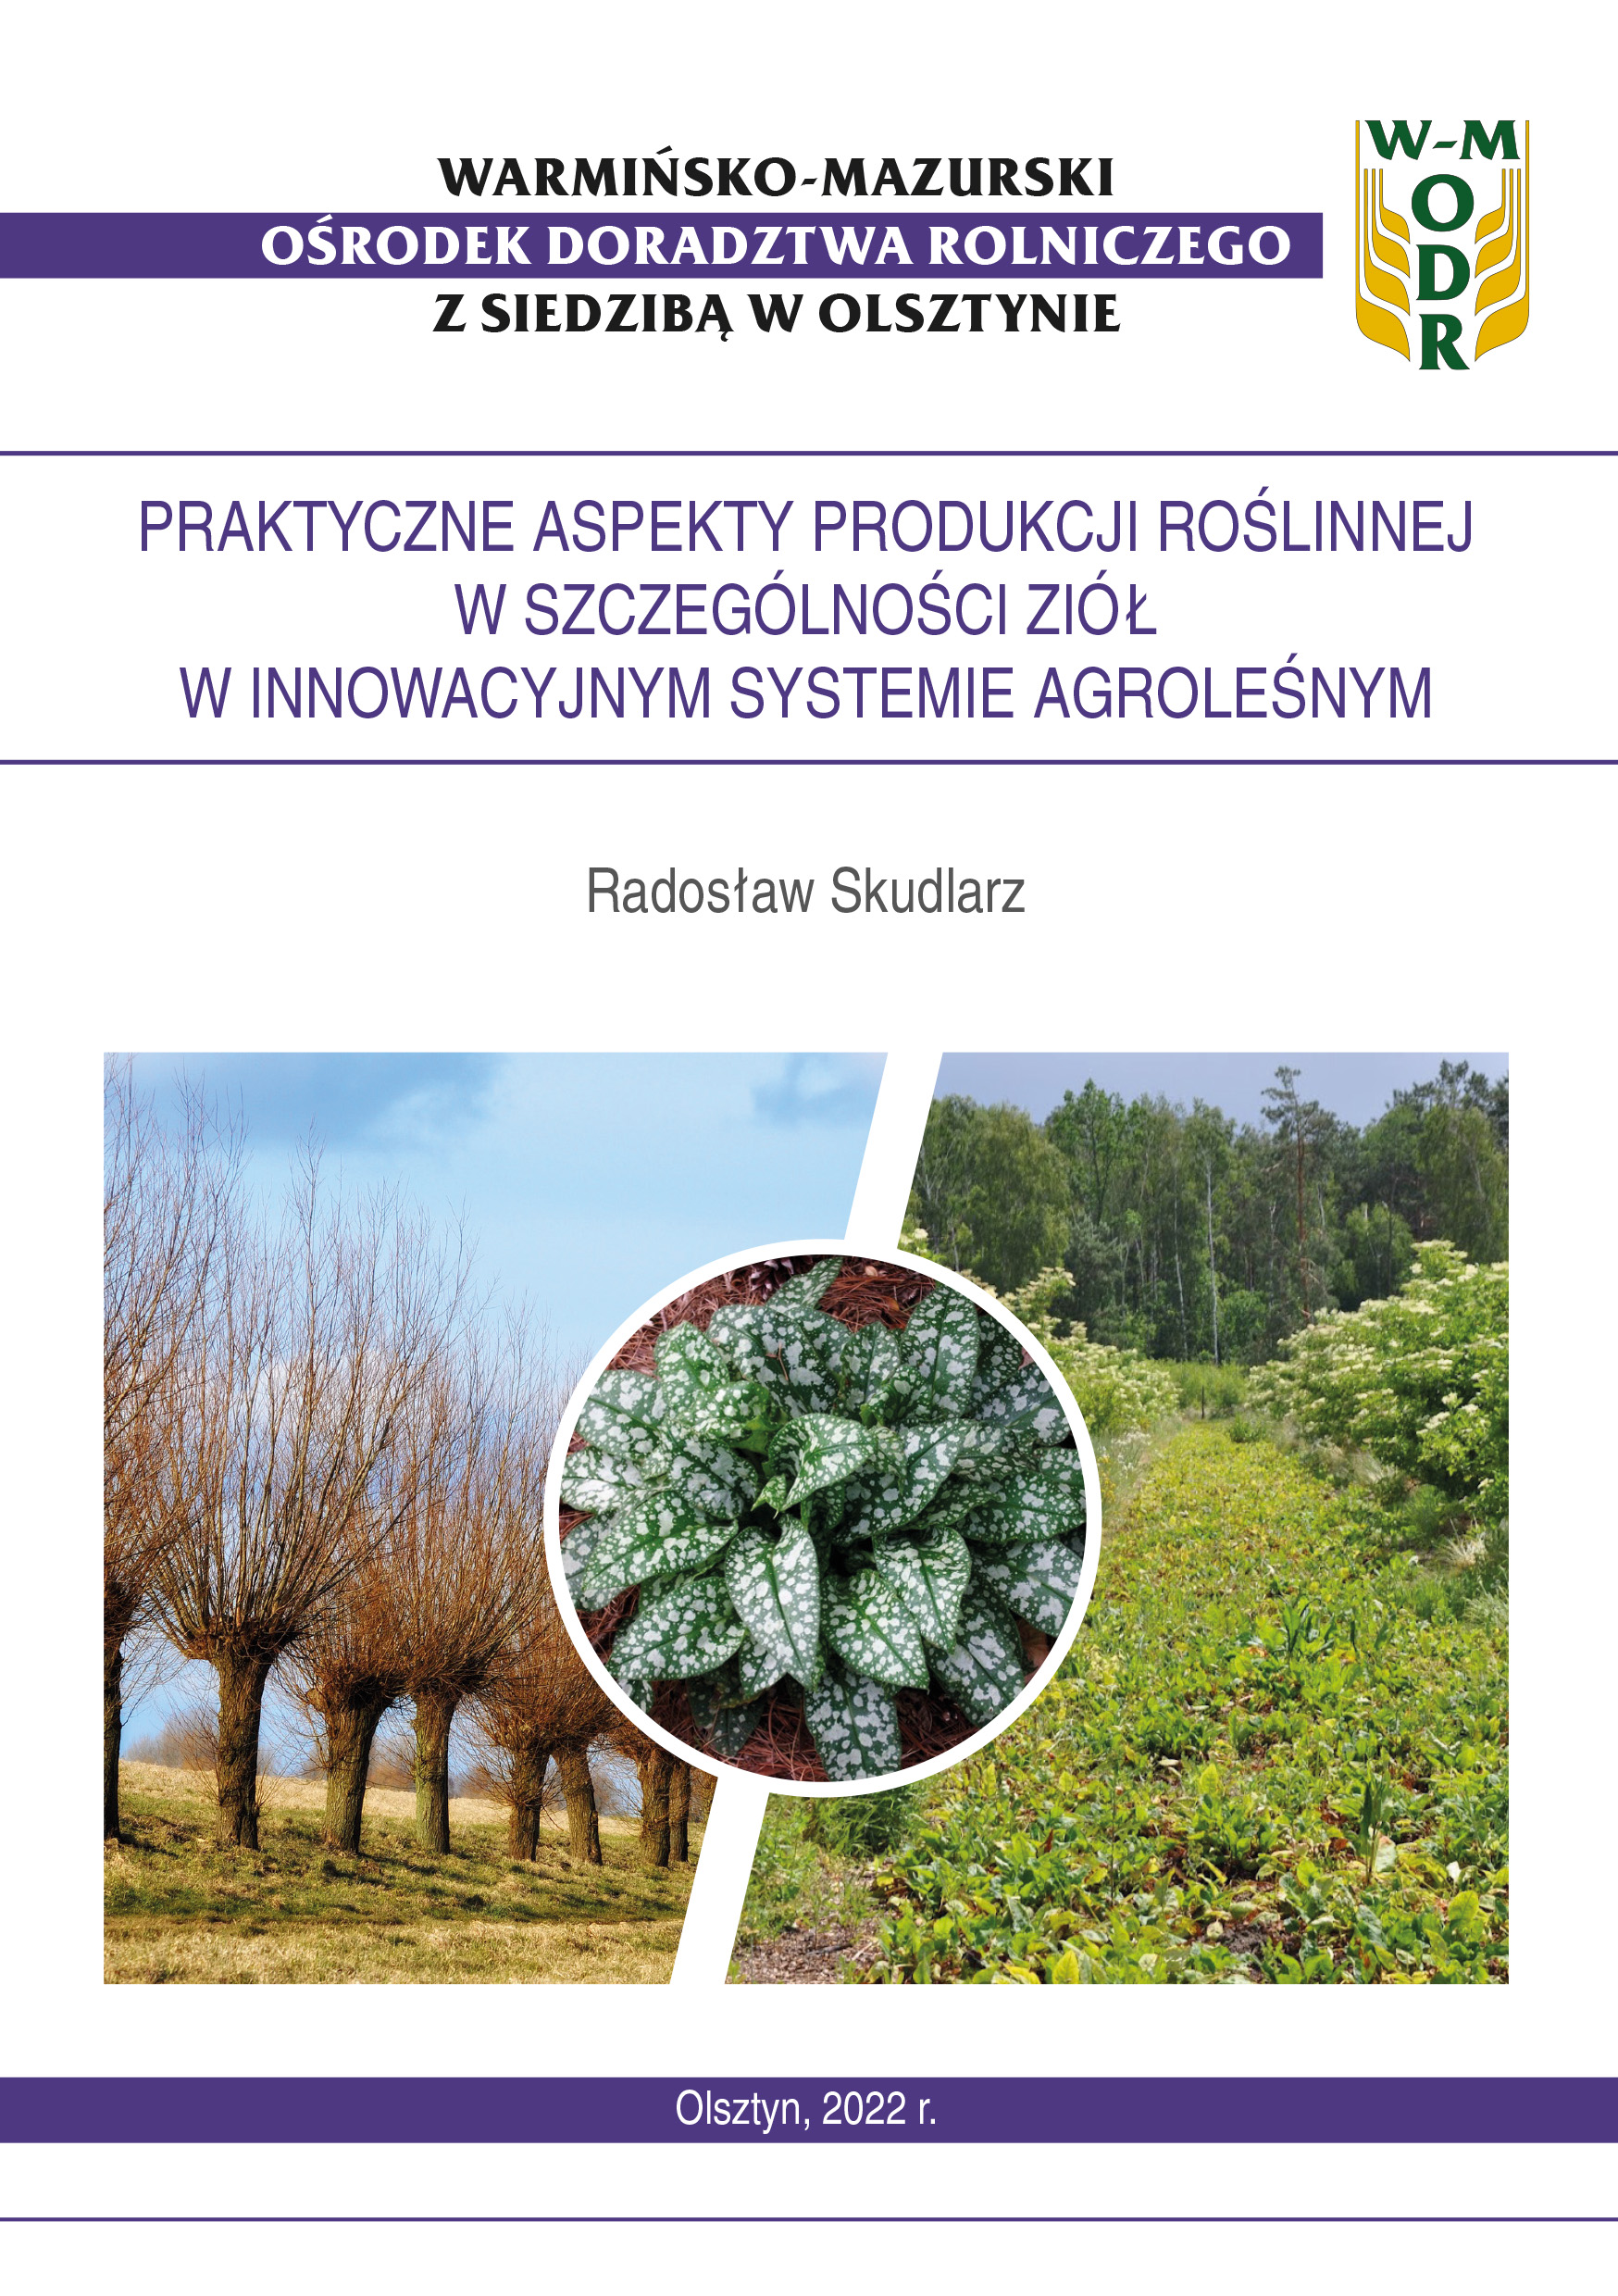 Praktyczne aspekty produkcji roślinnej w szczególności ziół w innowacyjnym systemie agroleśnym